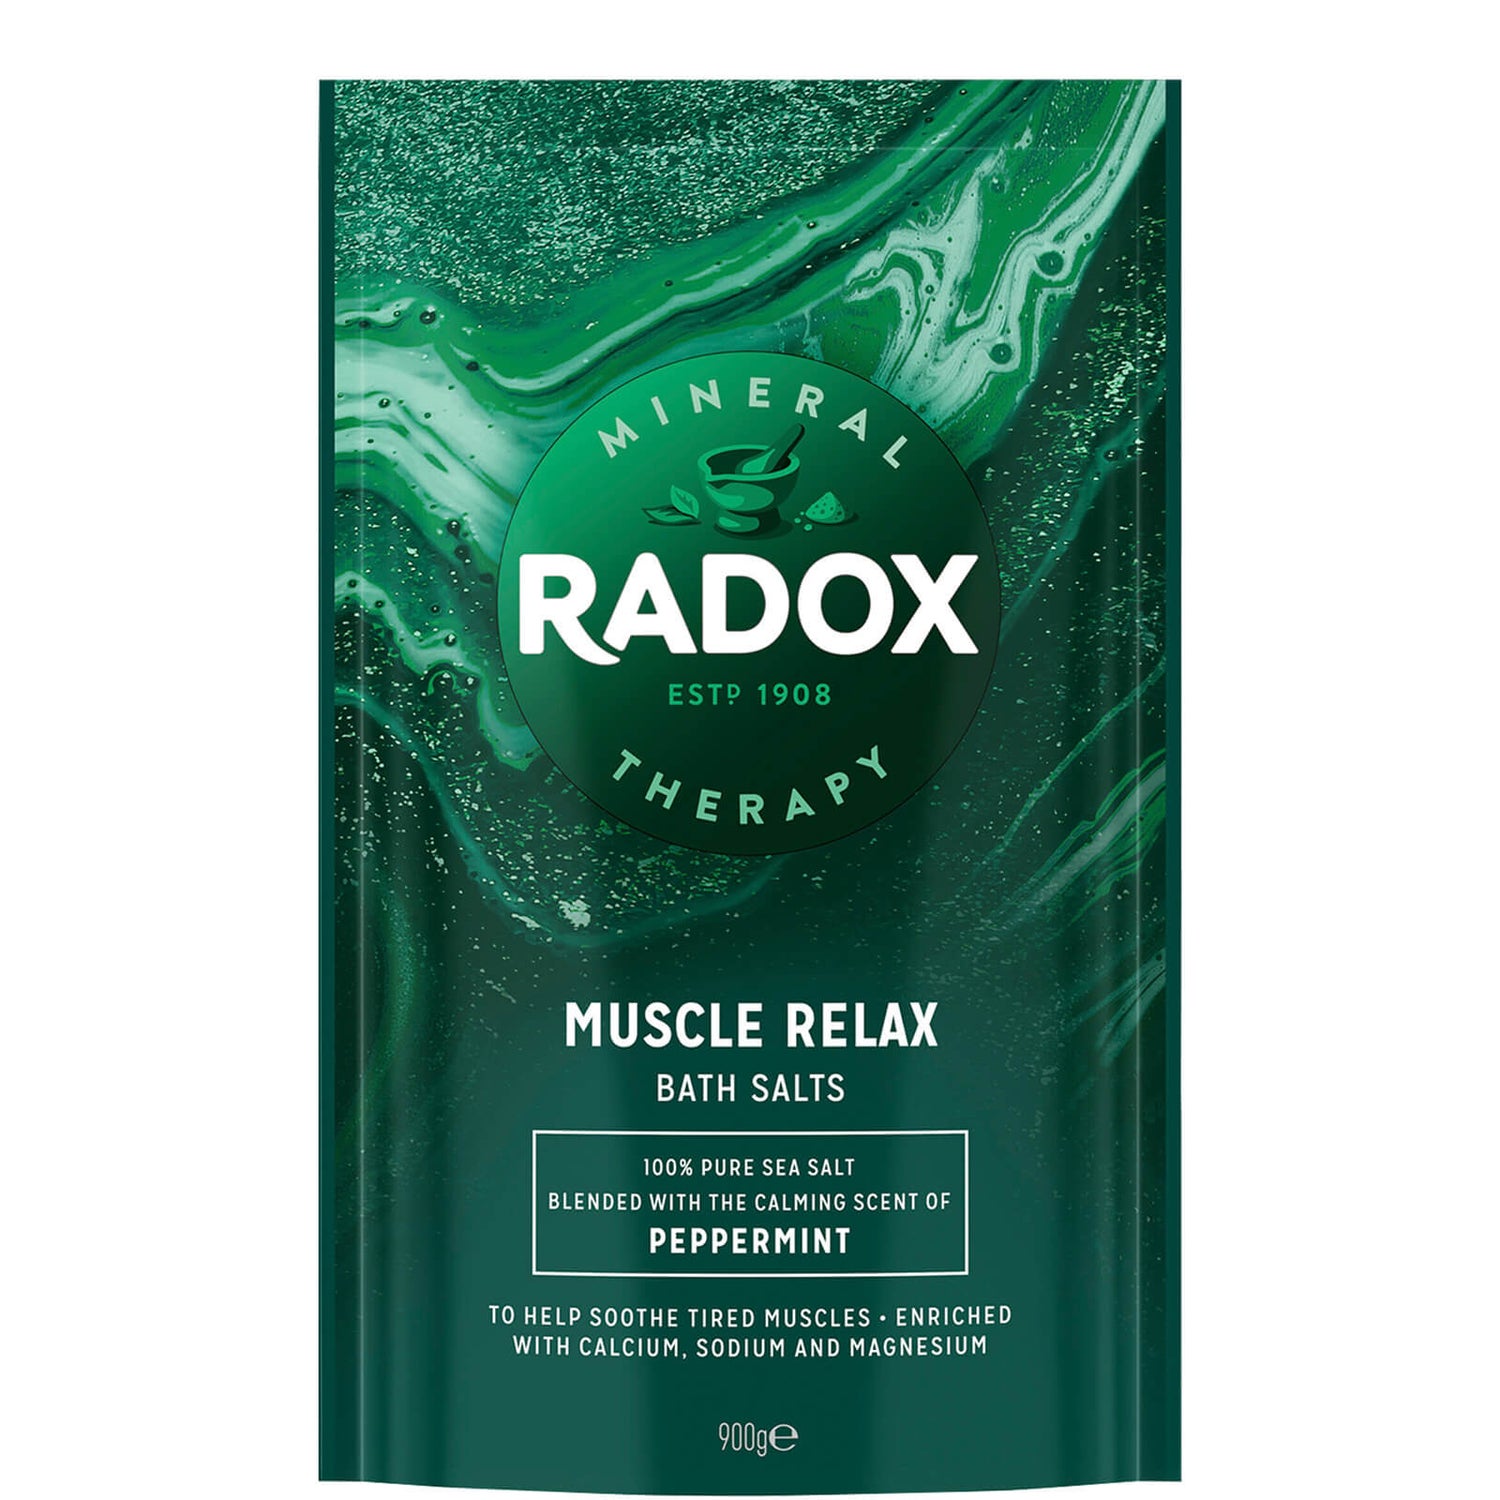 Sais de Banho Relaxantes para os Músculos da Radox 900g